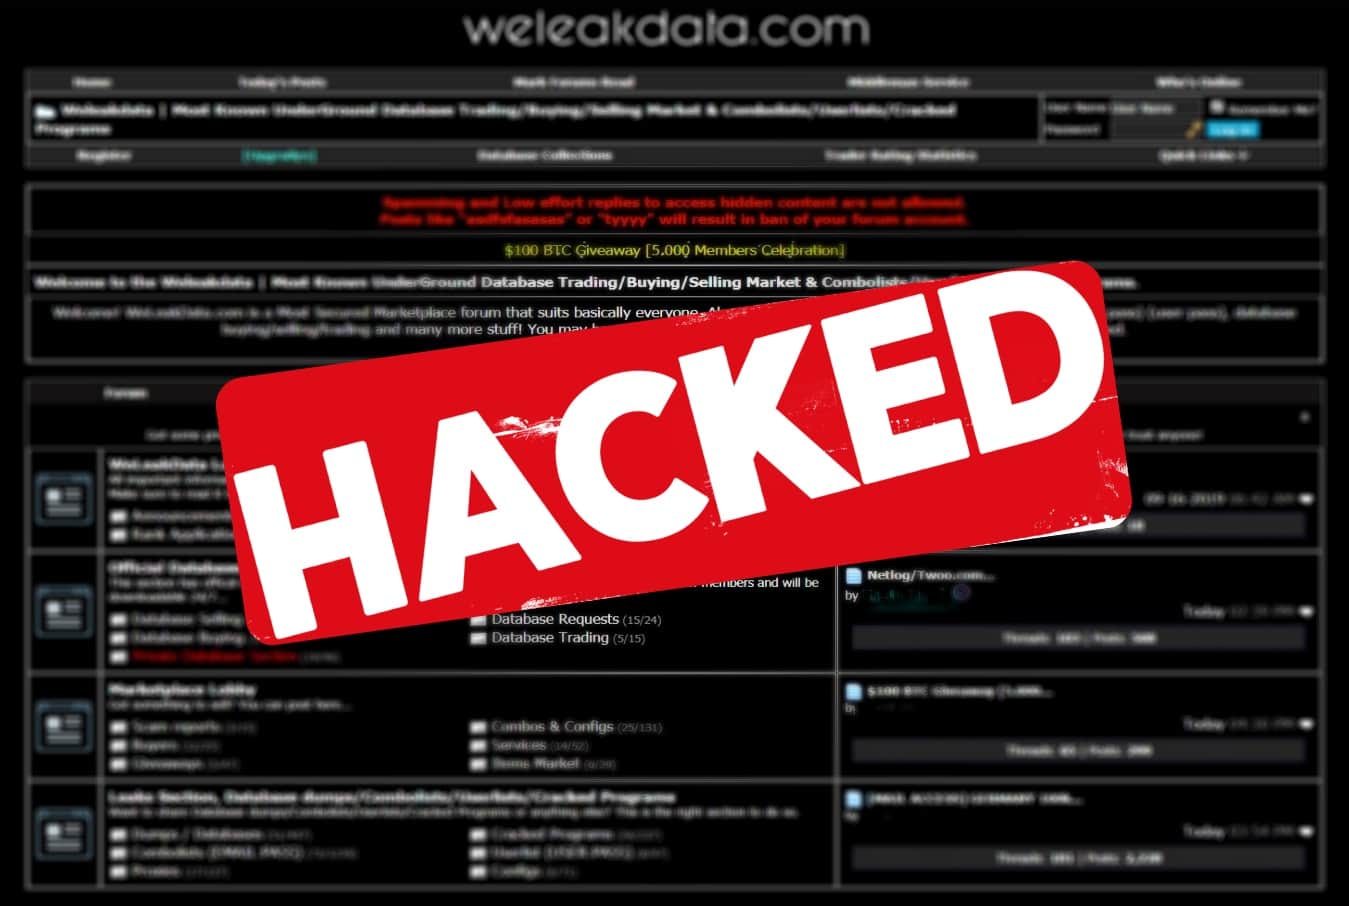 Stolen Database Trading Site Weleakdata Hacked Data Leaked